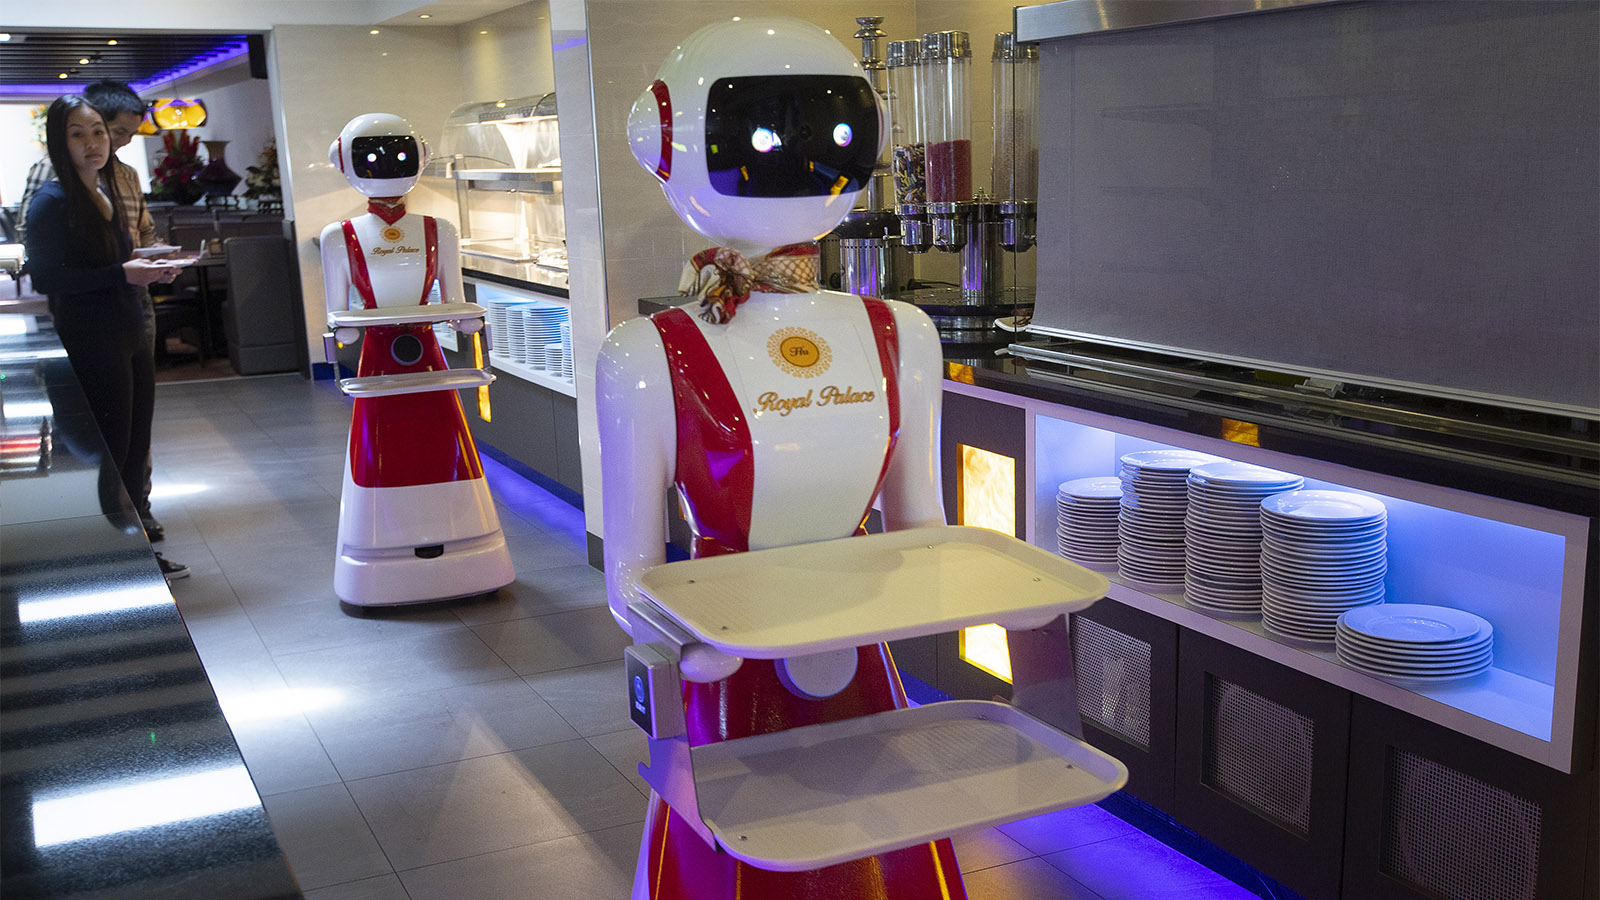 מלצרים רובוטיים במסעדה בדרום-מערב הולנד. "אנחנו למעשה בפתחה של המהפכה התעשייתית הרביעית" (צילום:AP Photo/Peter Dejong)